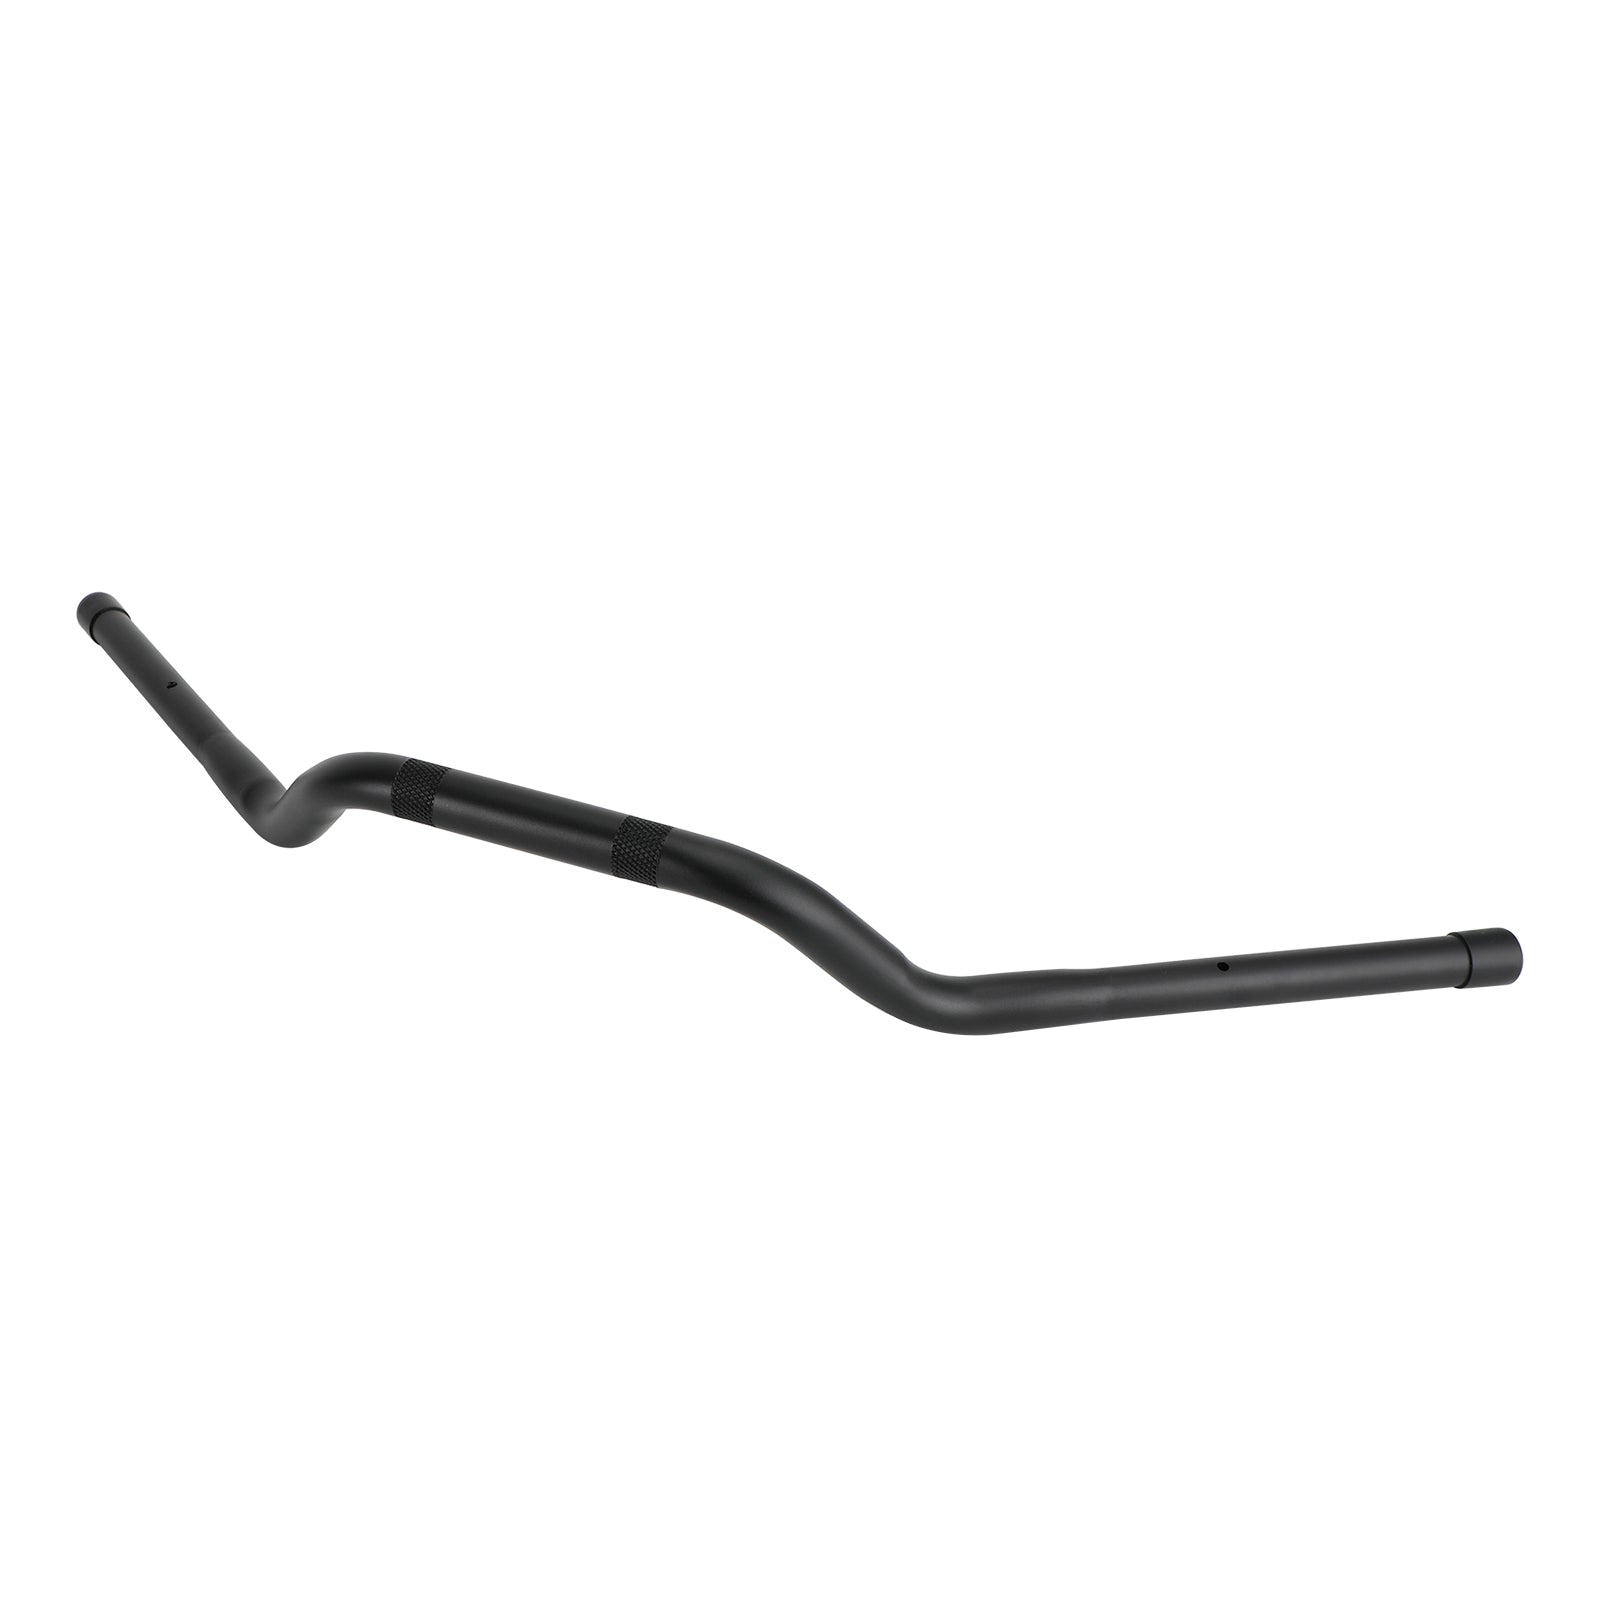 Alloy 7/8" 22Mm Raiser Handle Bars Black For Honda Cm300 2020-2022 2021